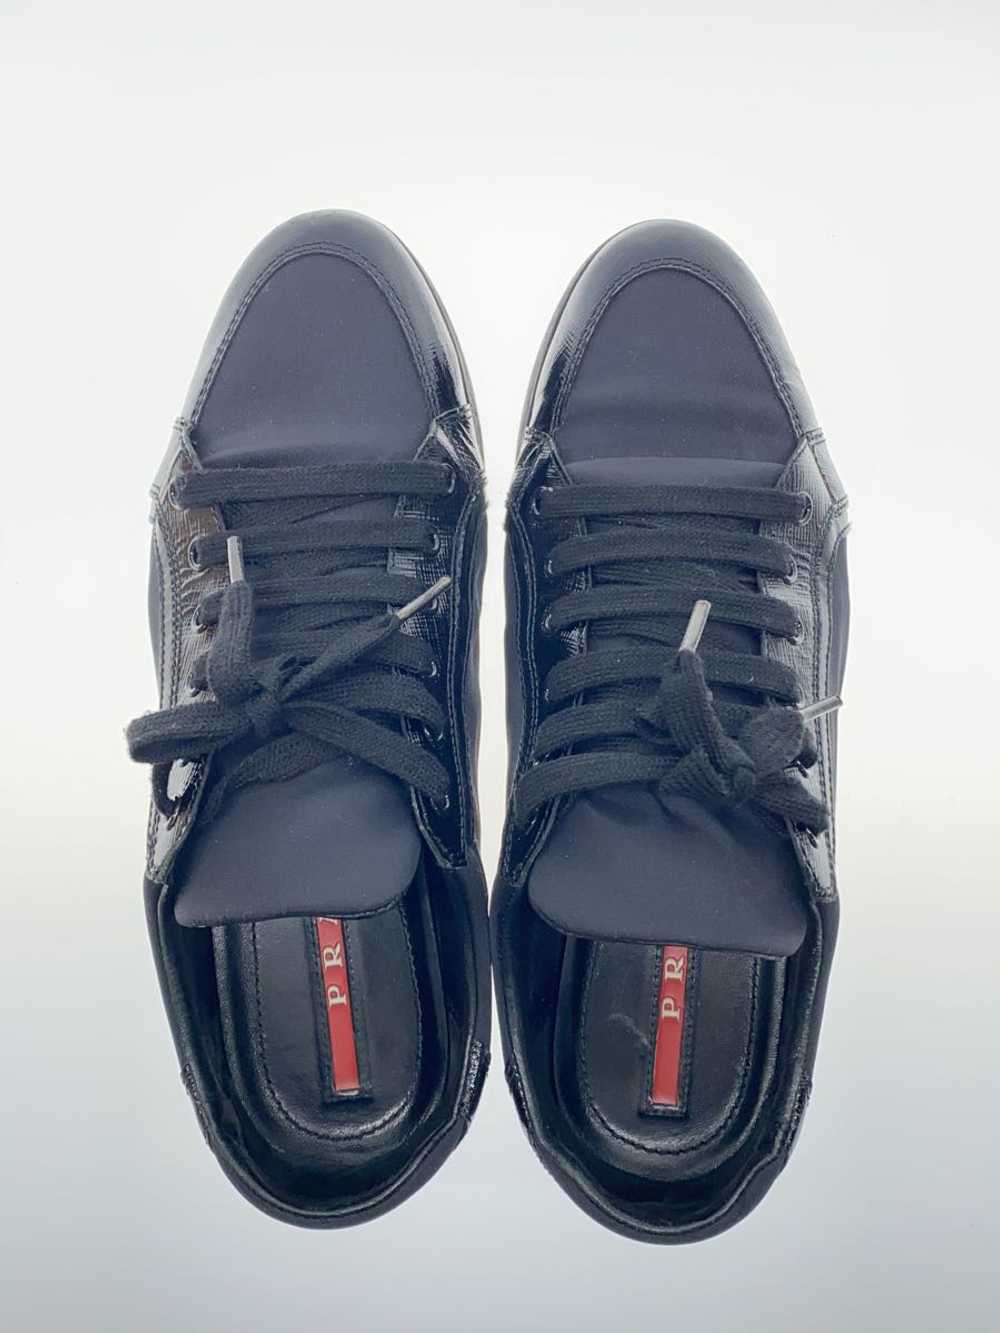 Prada Tessuto/Low Cut Sneakers/37/Blk/Black/Nylon… - image 3